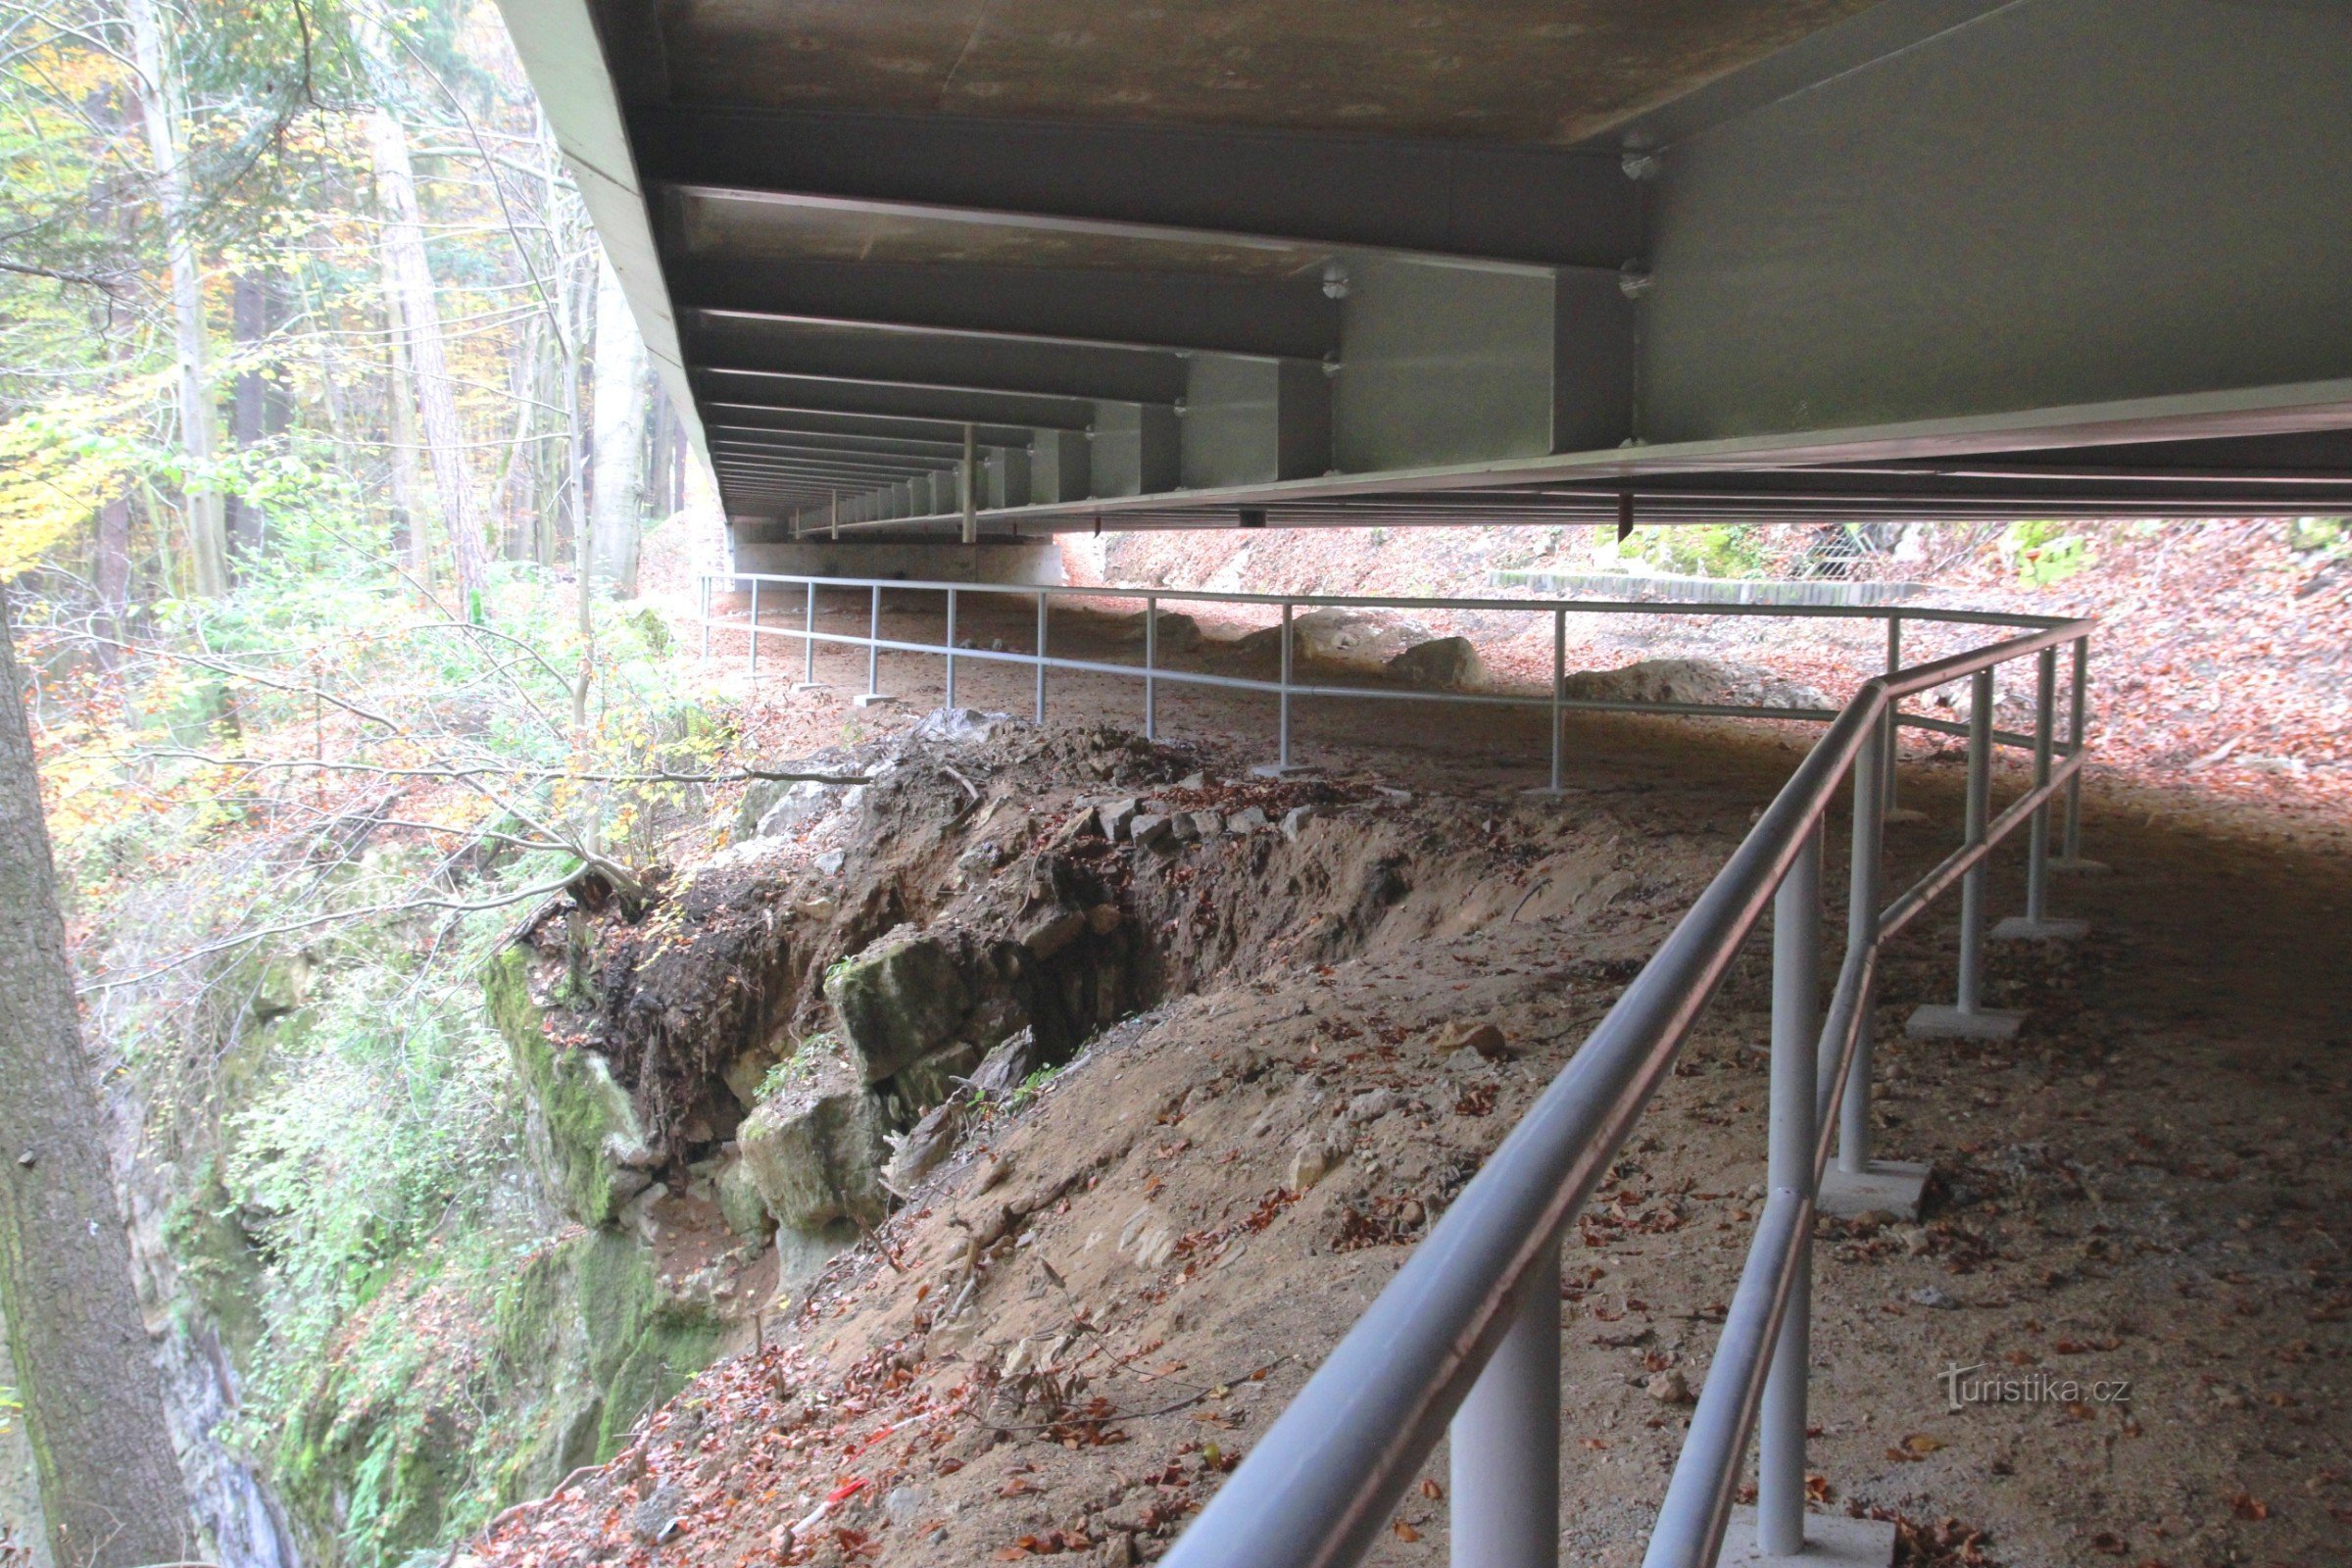 Під мостом є перила безпеки на краю скель, просвіт під мостом близько 1,5 м.